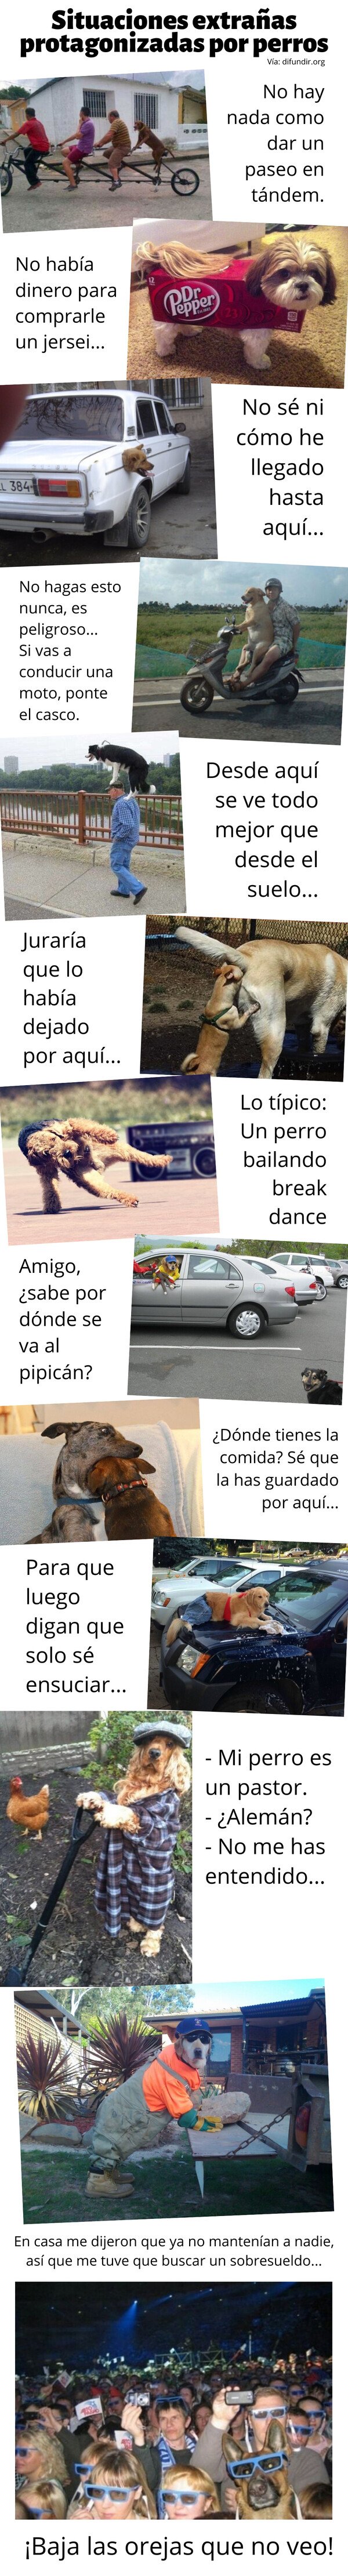 Meme_otros - Situaciones extrañas protagonizadas por perros